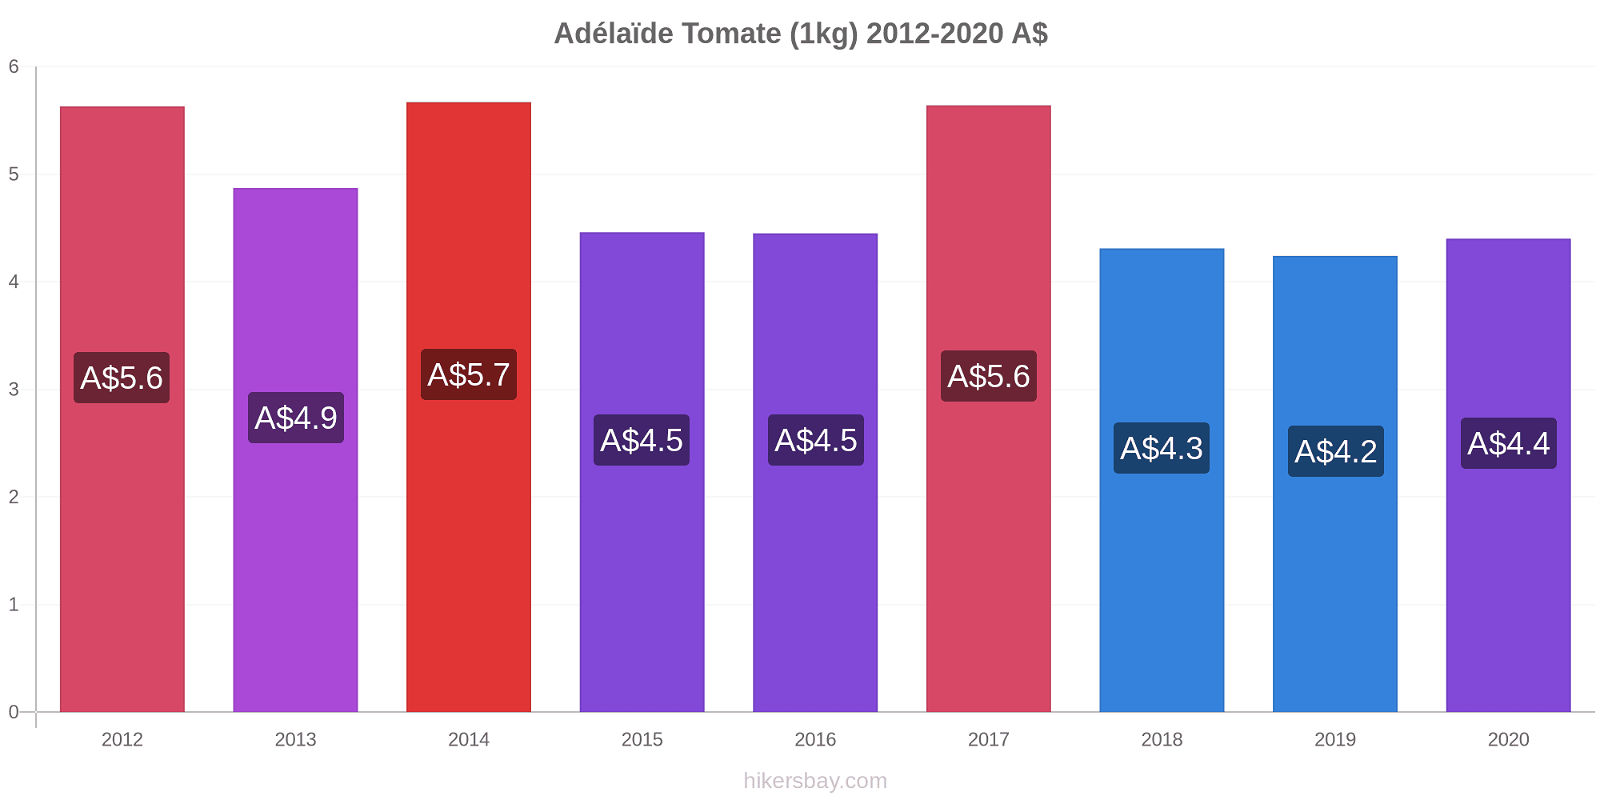 Adélaïde changements de prix Tomate (1kg) hikersbay.com